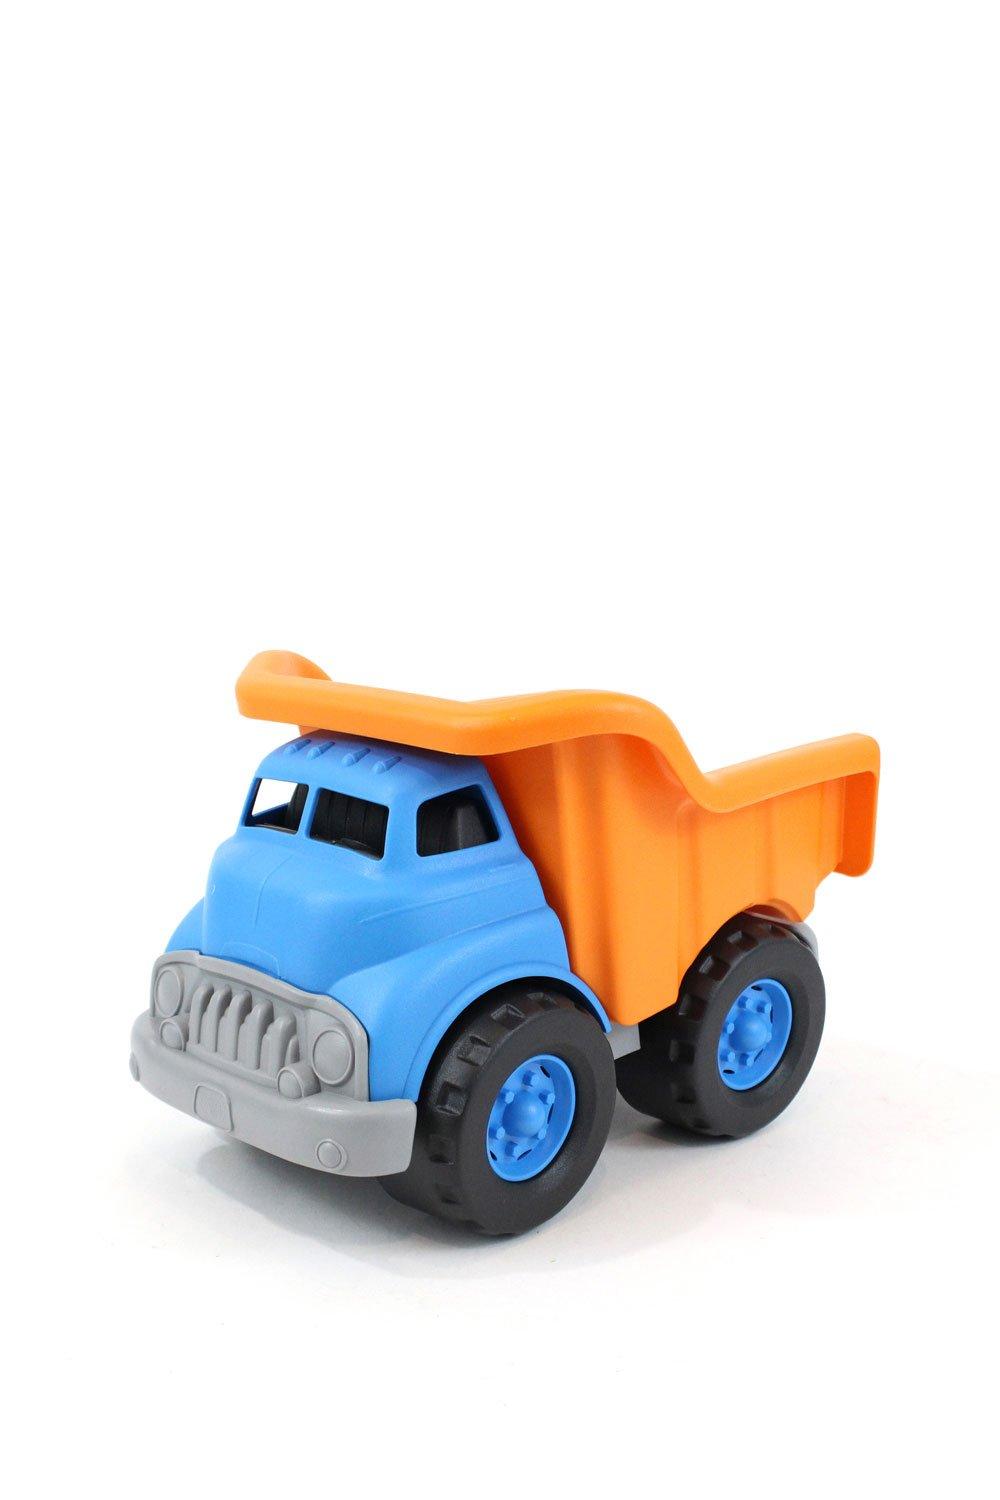 Green Toys Dump Truck|blue